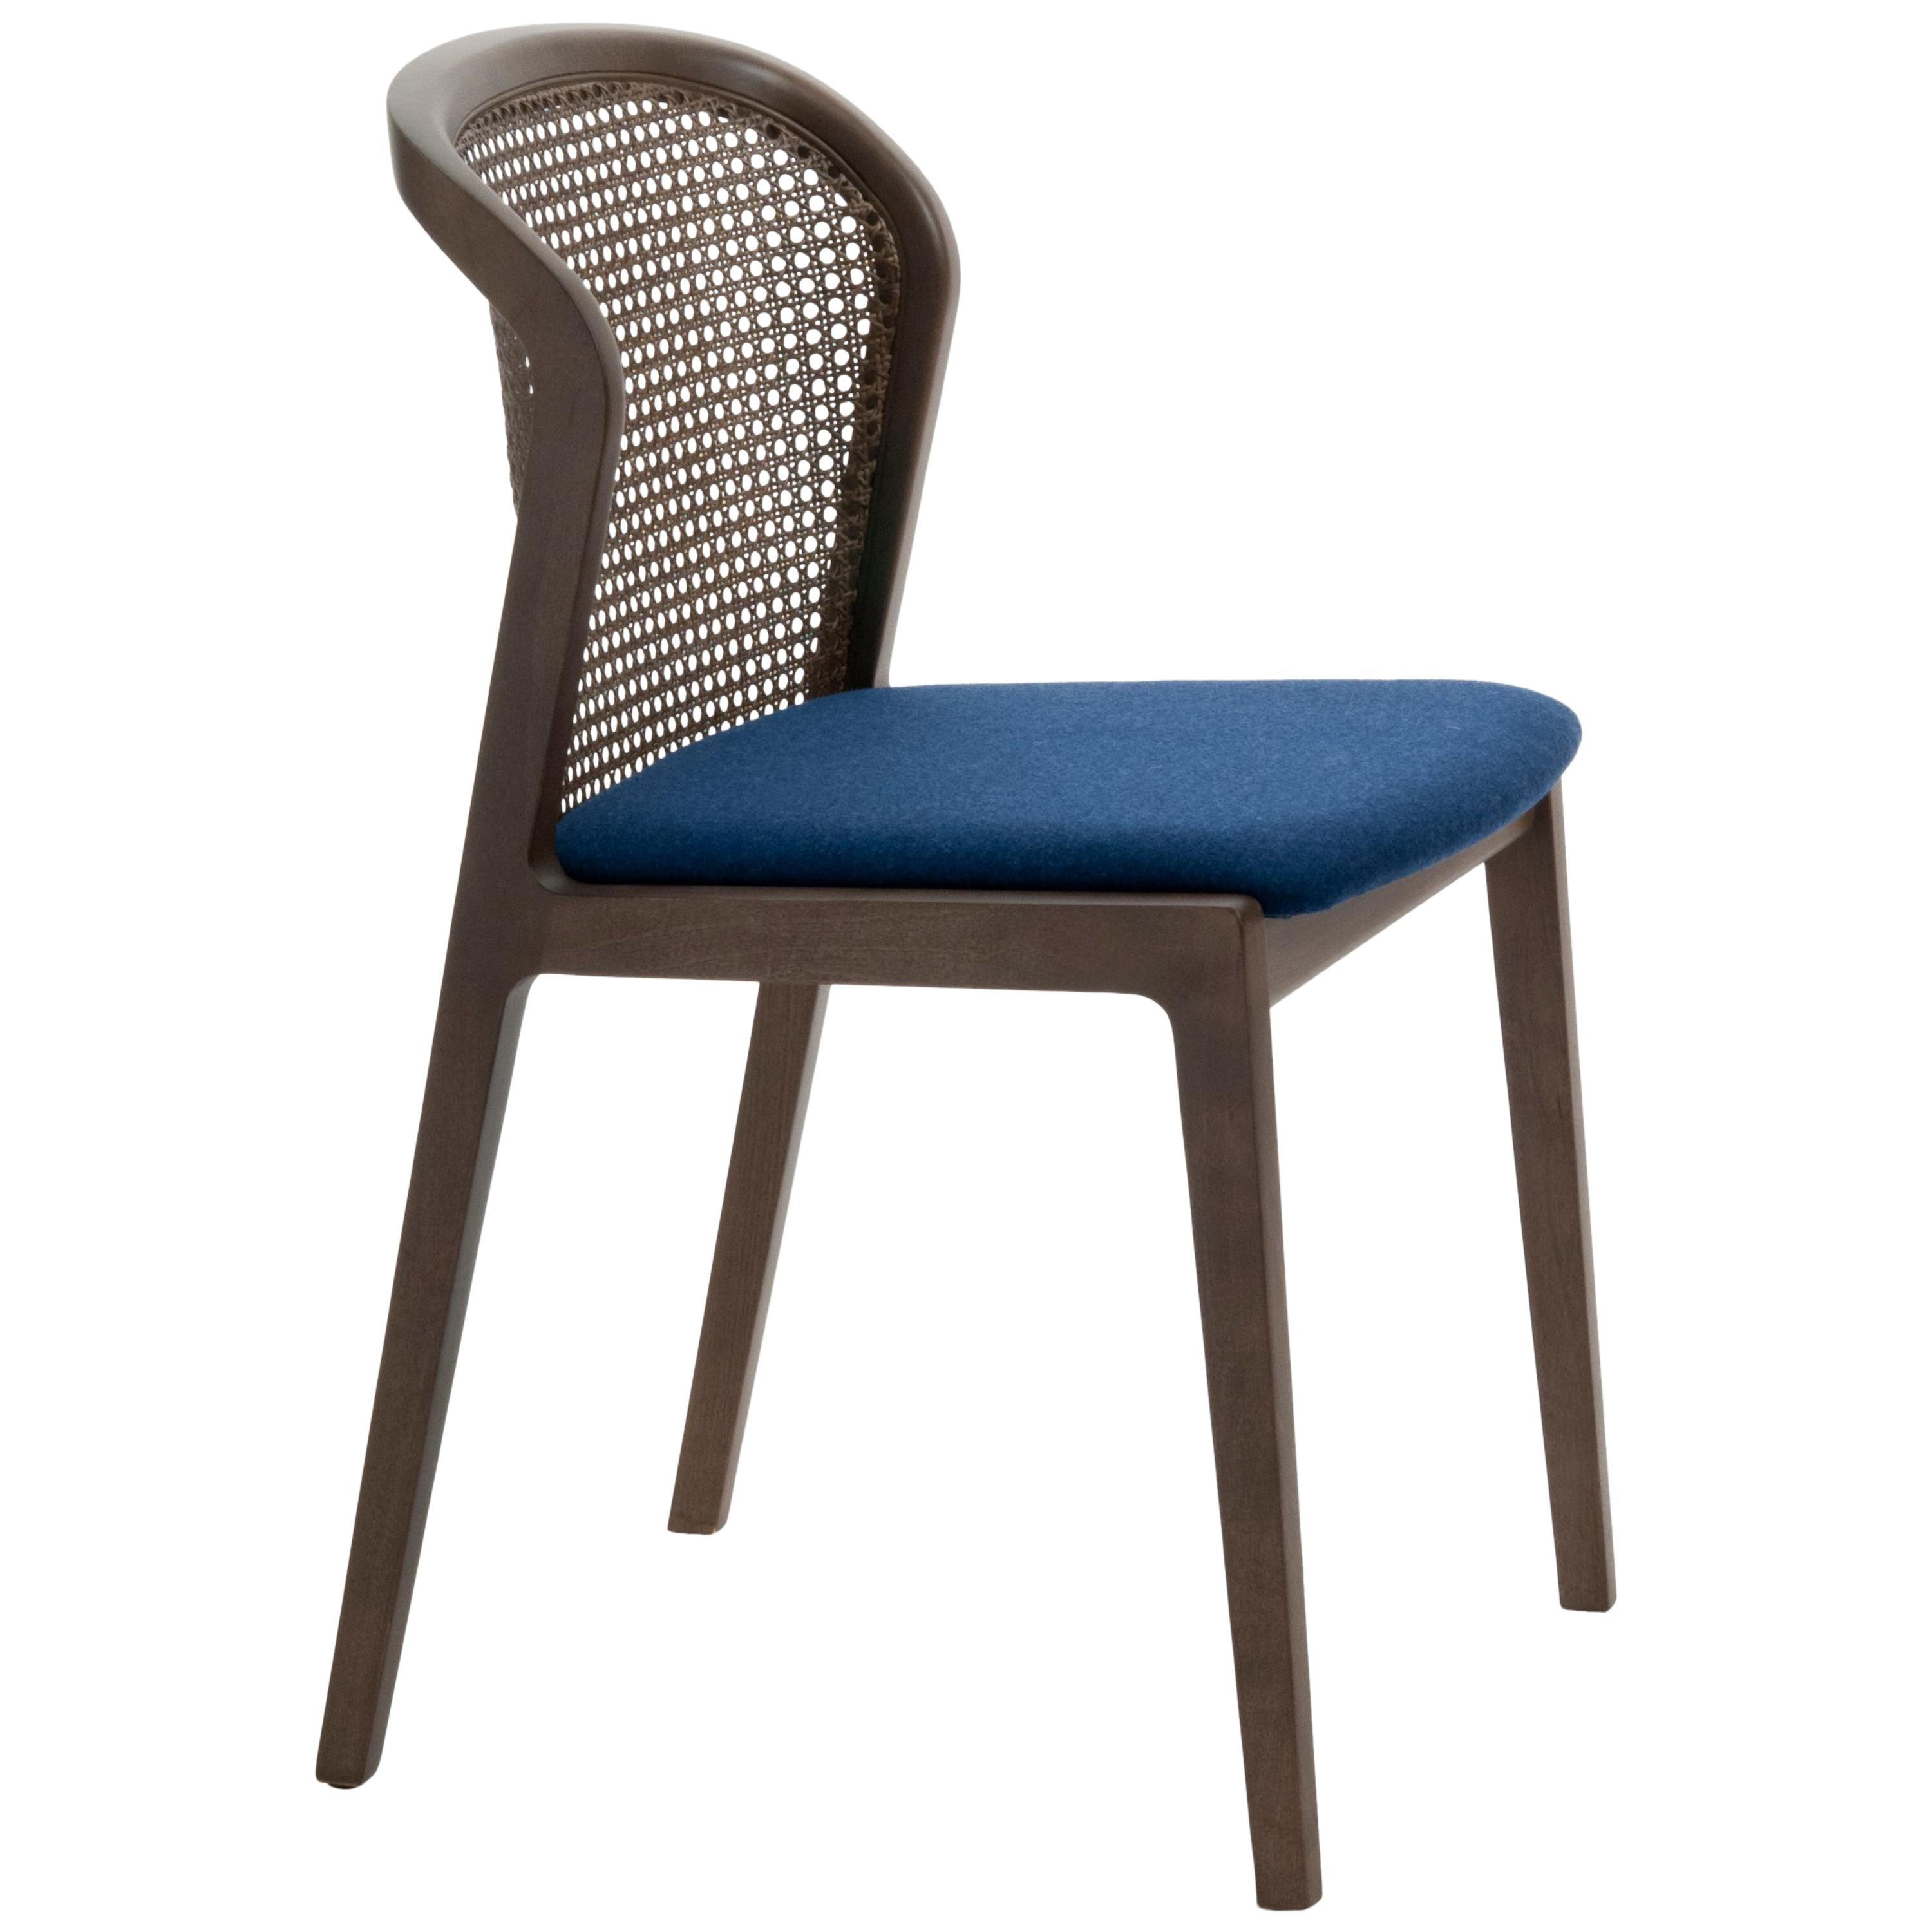 Vienna ist ein außergewöhnlich komfortabler und eleganter Stuhl, der von Emmanuel Gallina entworfen wurde, der gerne Brancusi zitiert, wenn er sagt, dass 